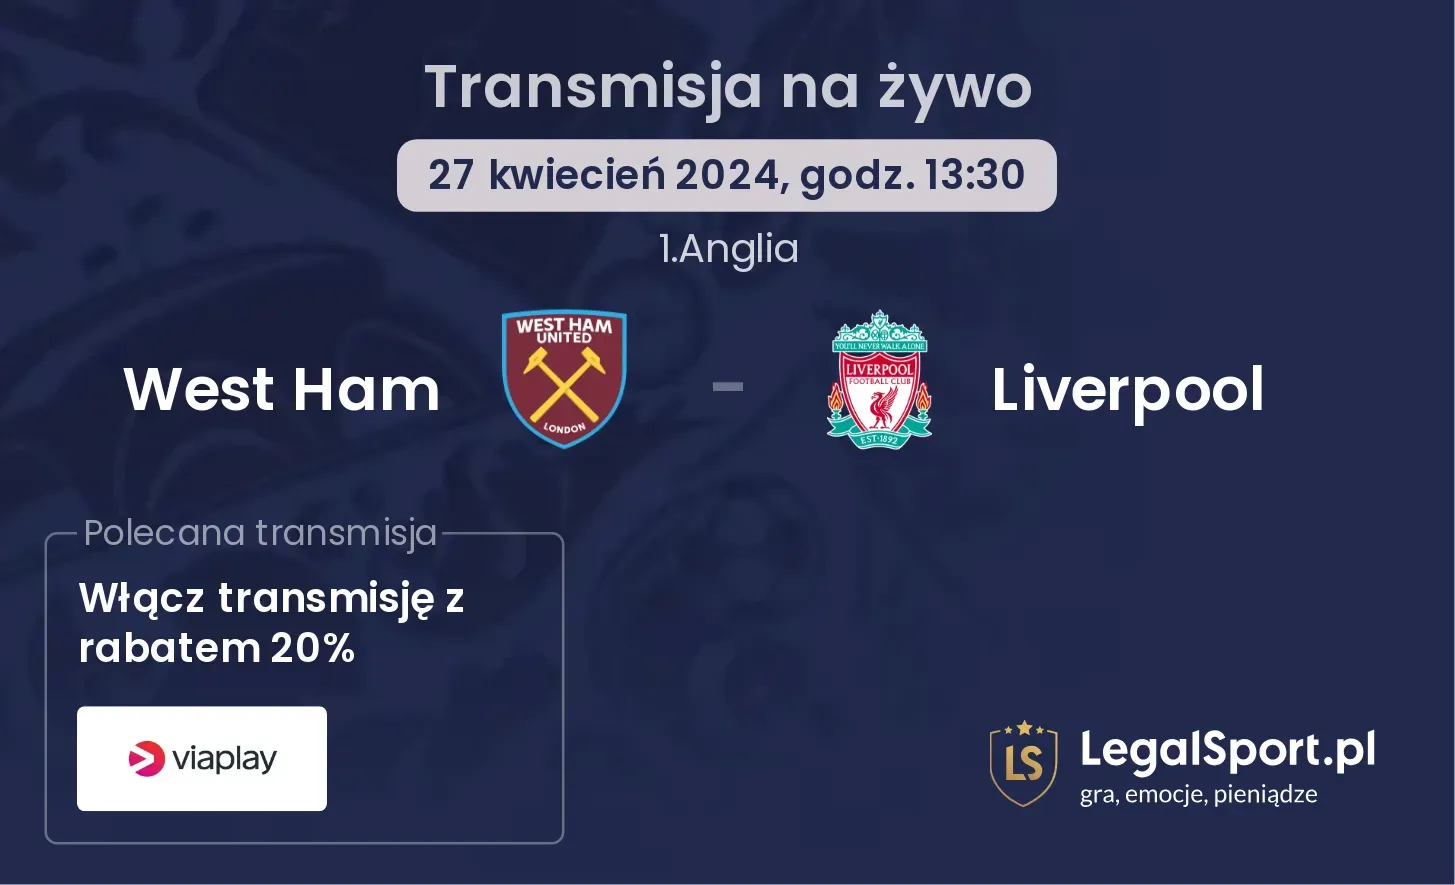 West Ham - Liverpool transmisja na żywo